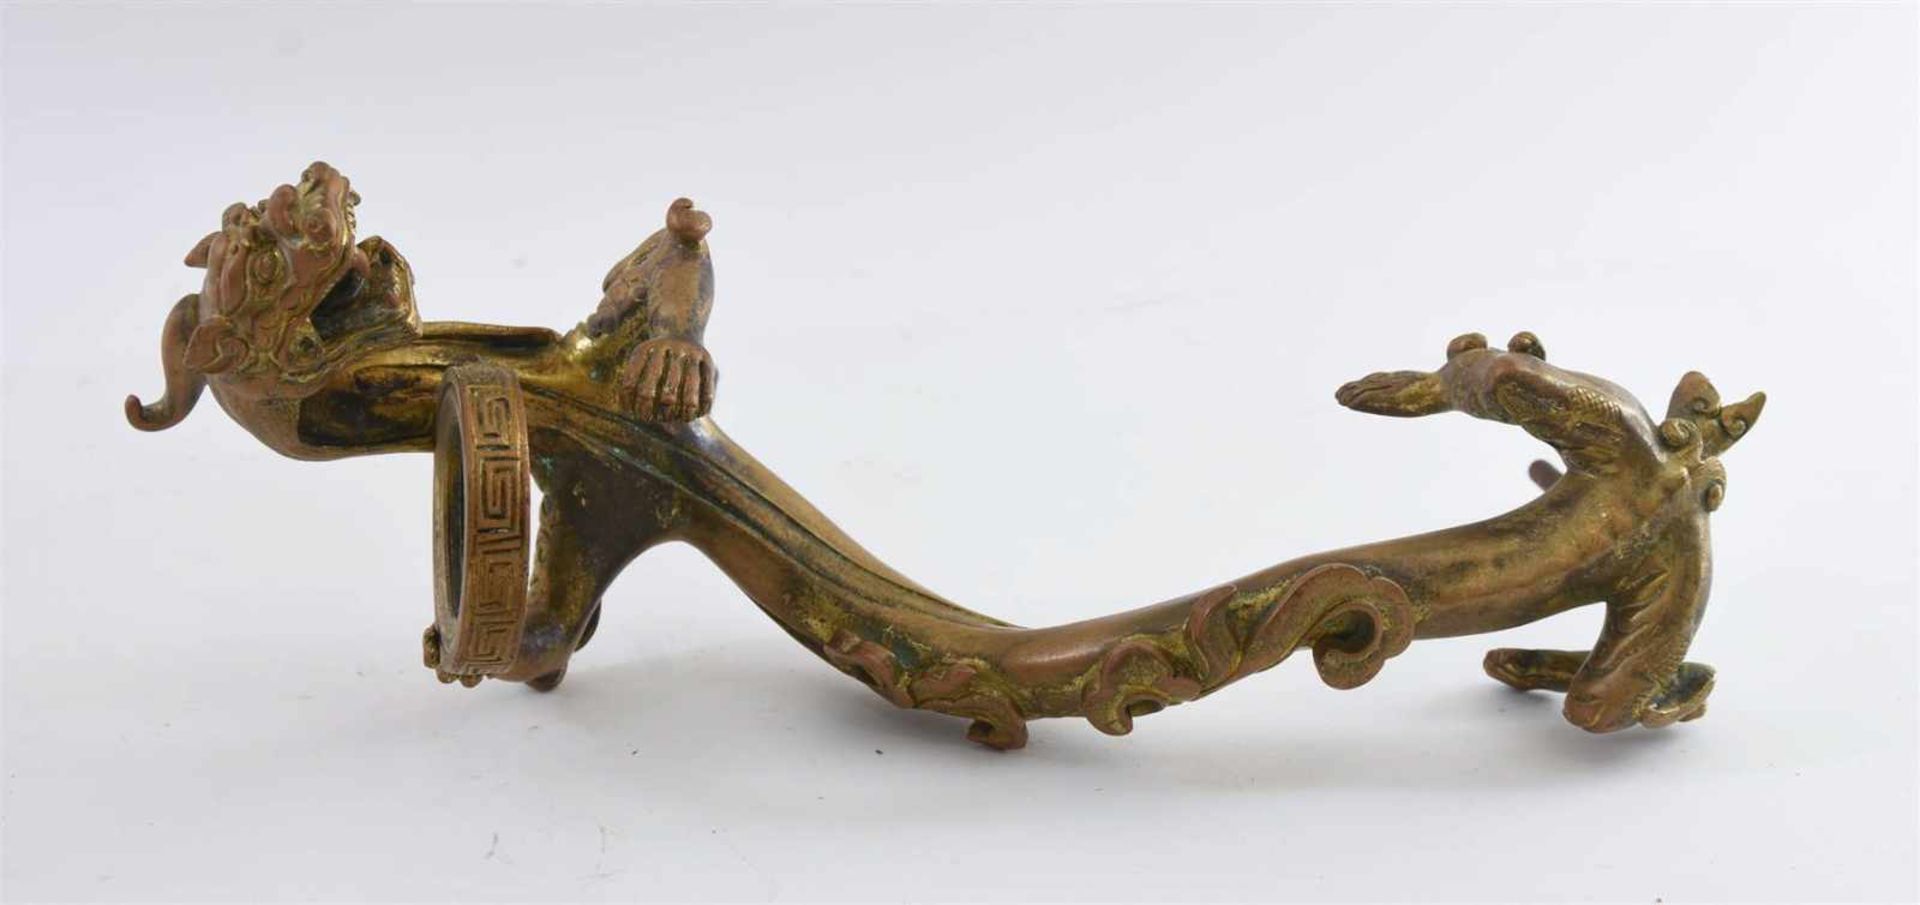 TÜRGRIFF "DRACHE", Messing, China frühes 20. Jahrhundert Bronzefarbener Türgriff in Form eines